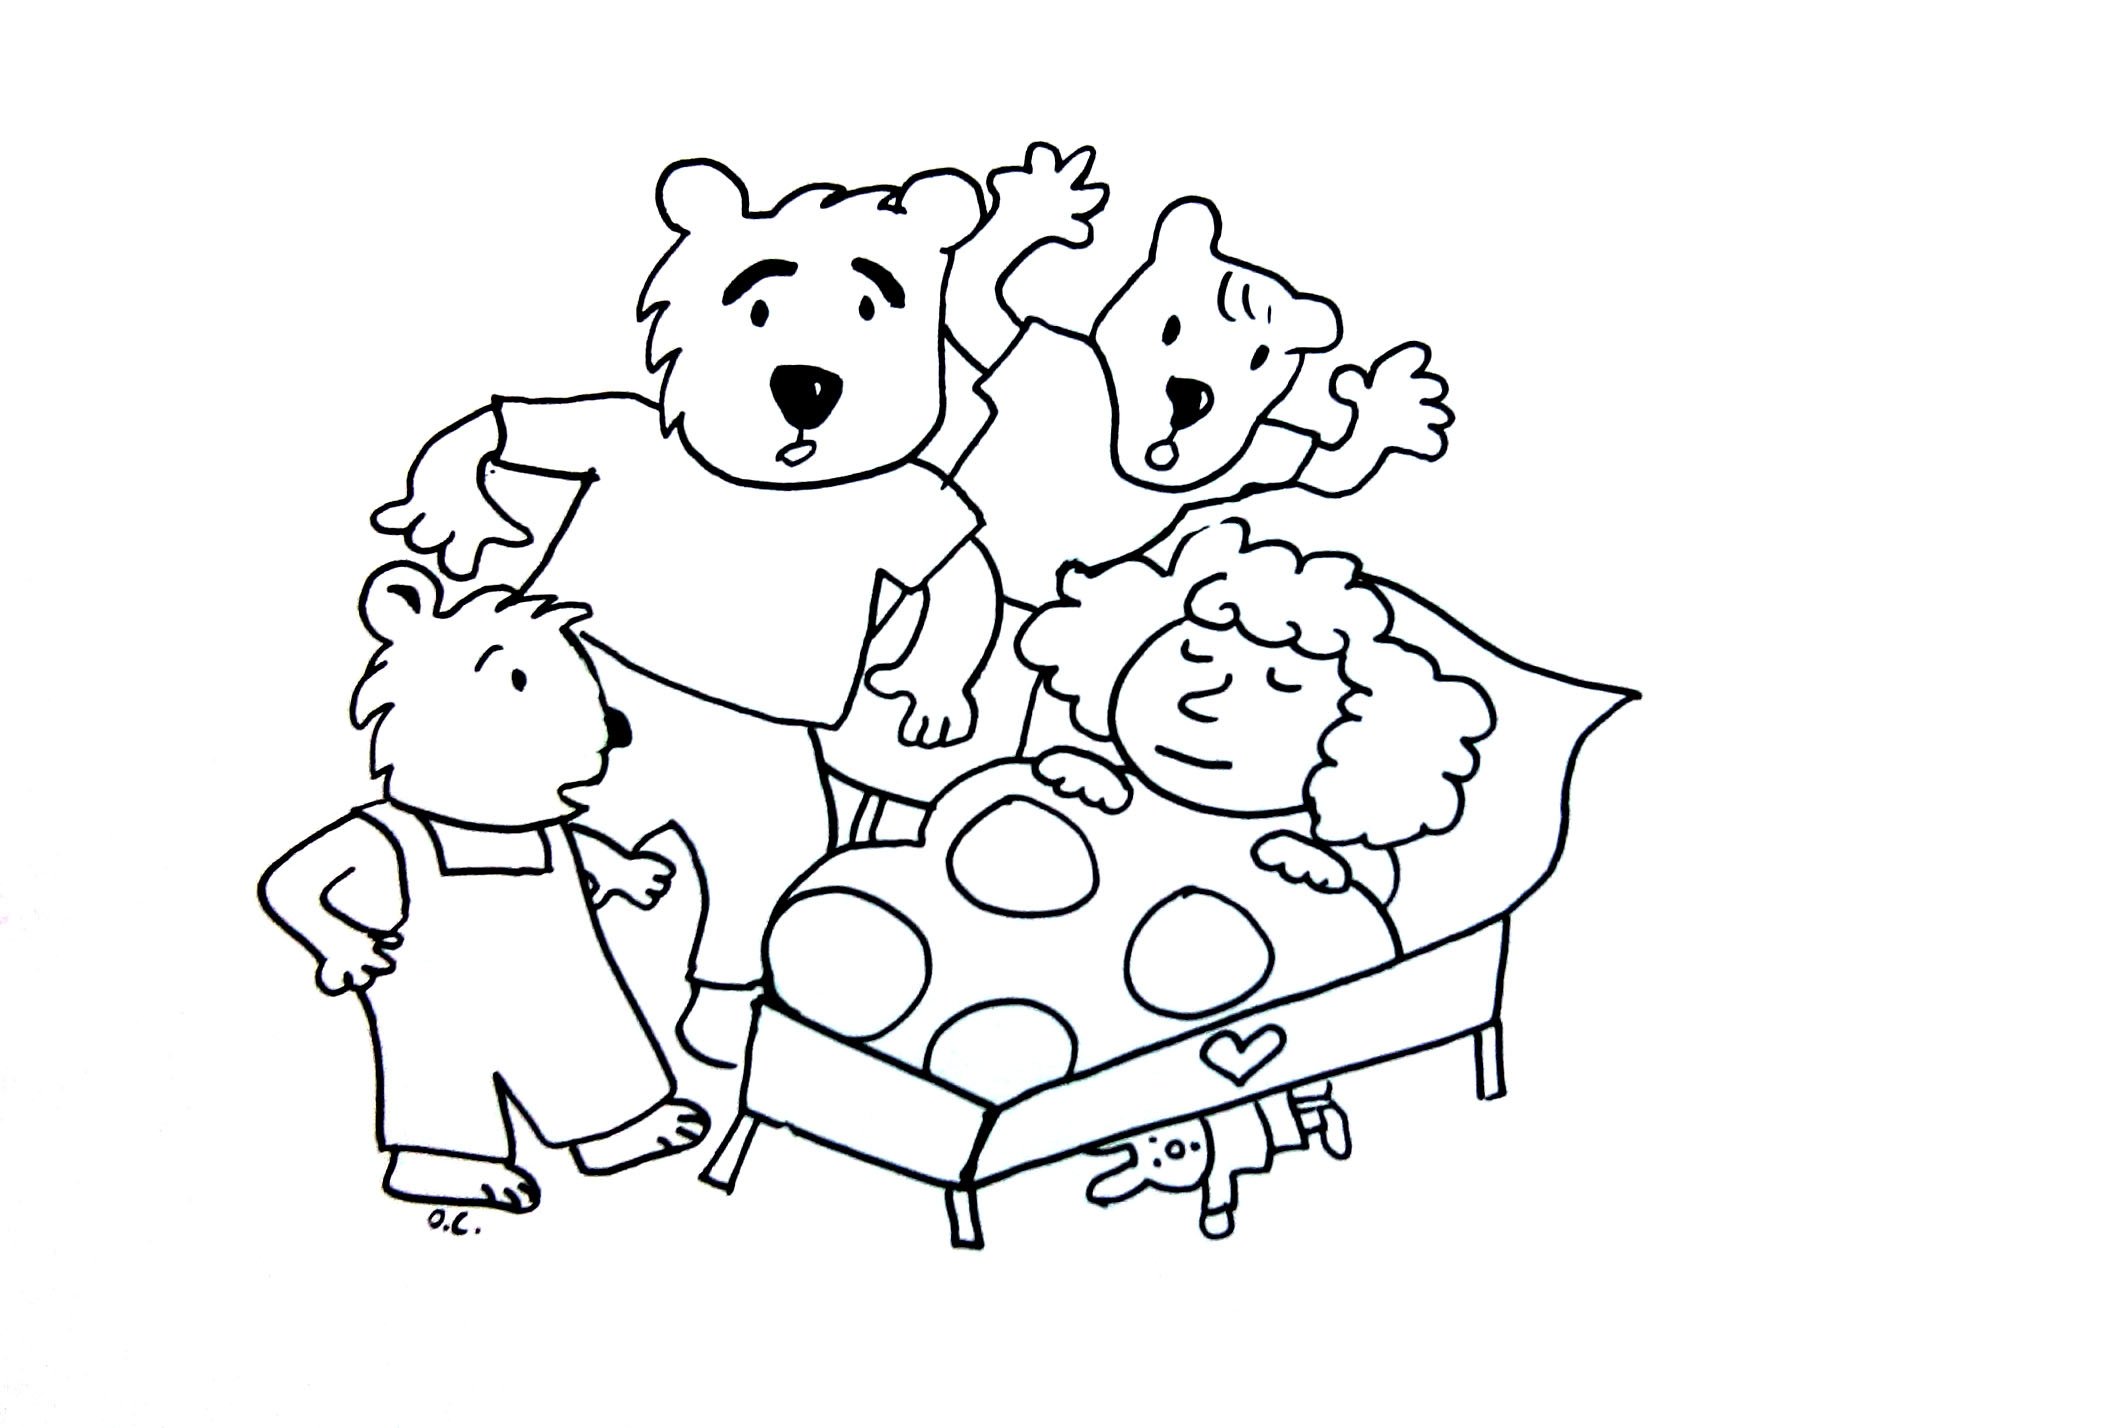 Bear family #4